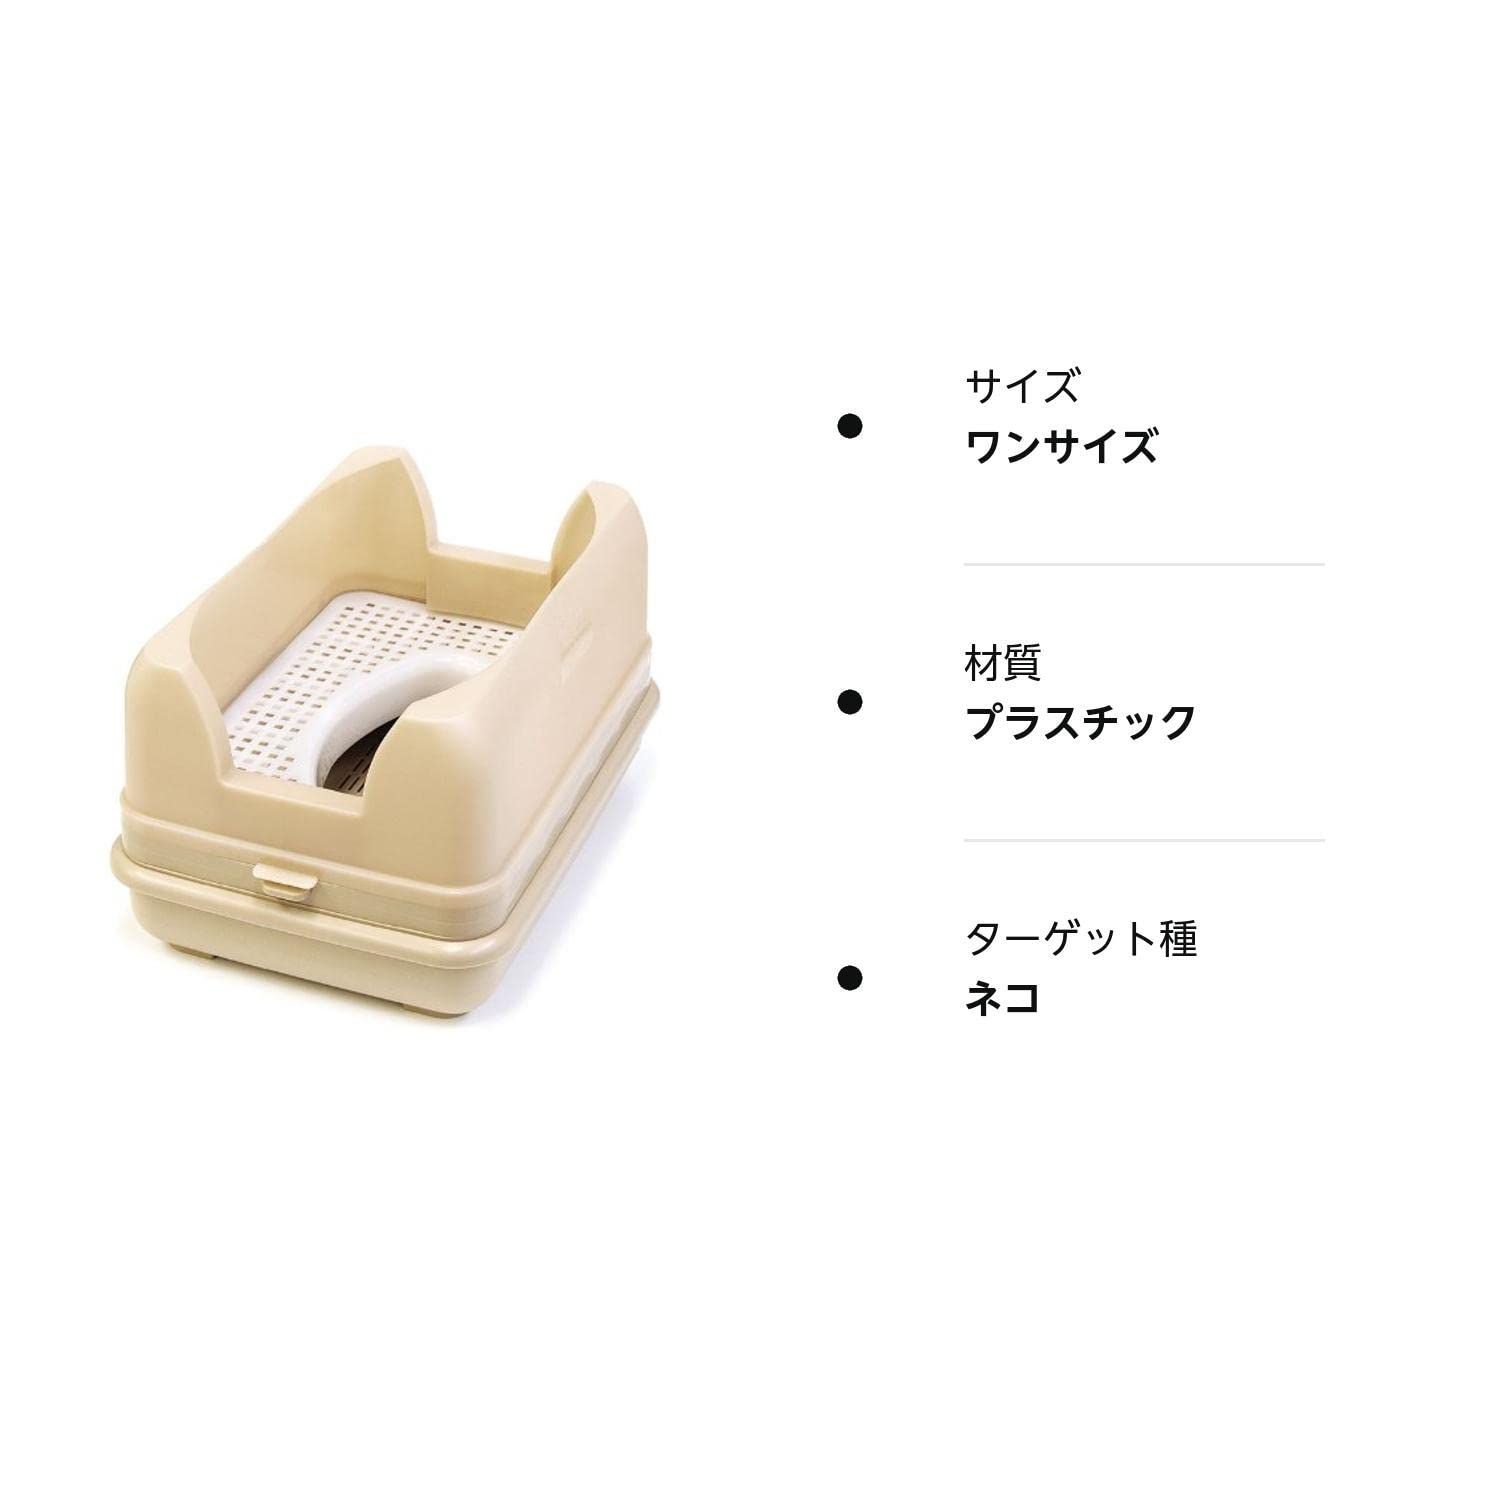 アマノ PJR専用タイムカード PJRカード 00048450まとめ買い3パックセット - 4